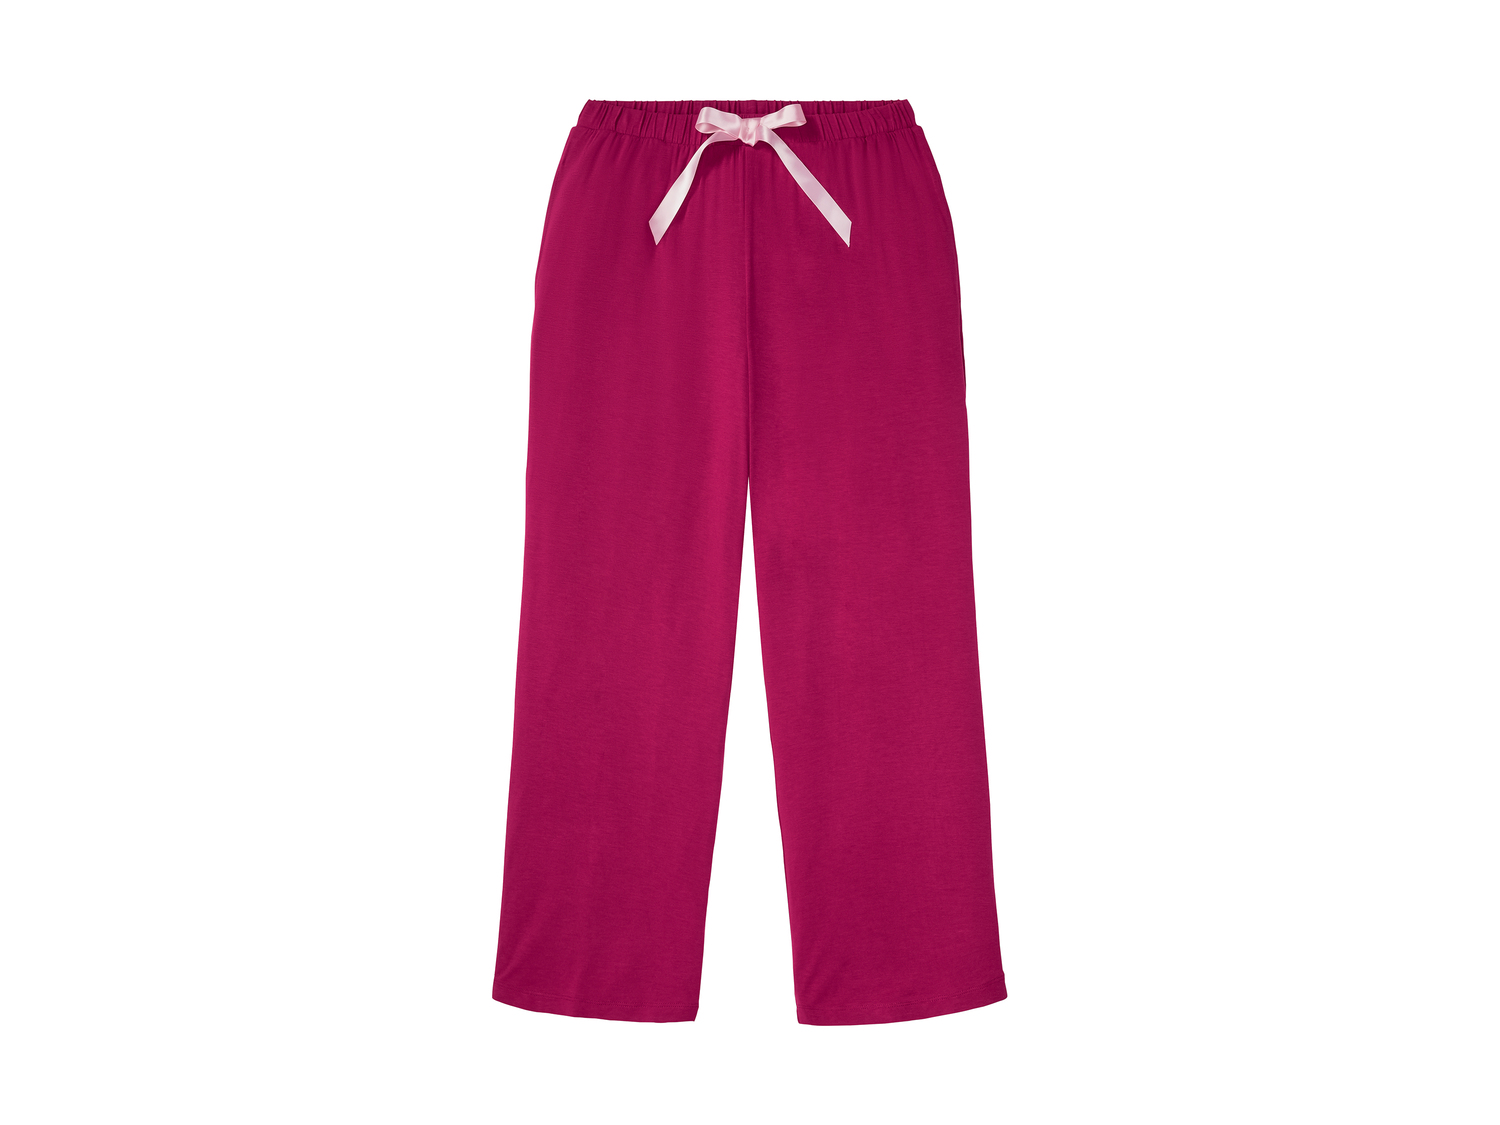 Pyjama femme , le prix 9.99 € 
- Du S au XL selon modèle.
- Dos rallongé
- ...